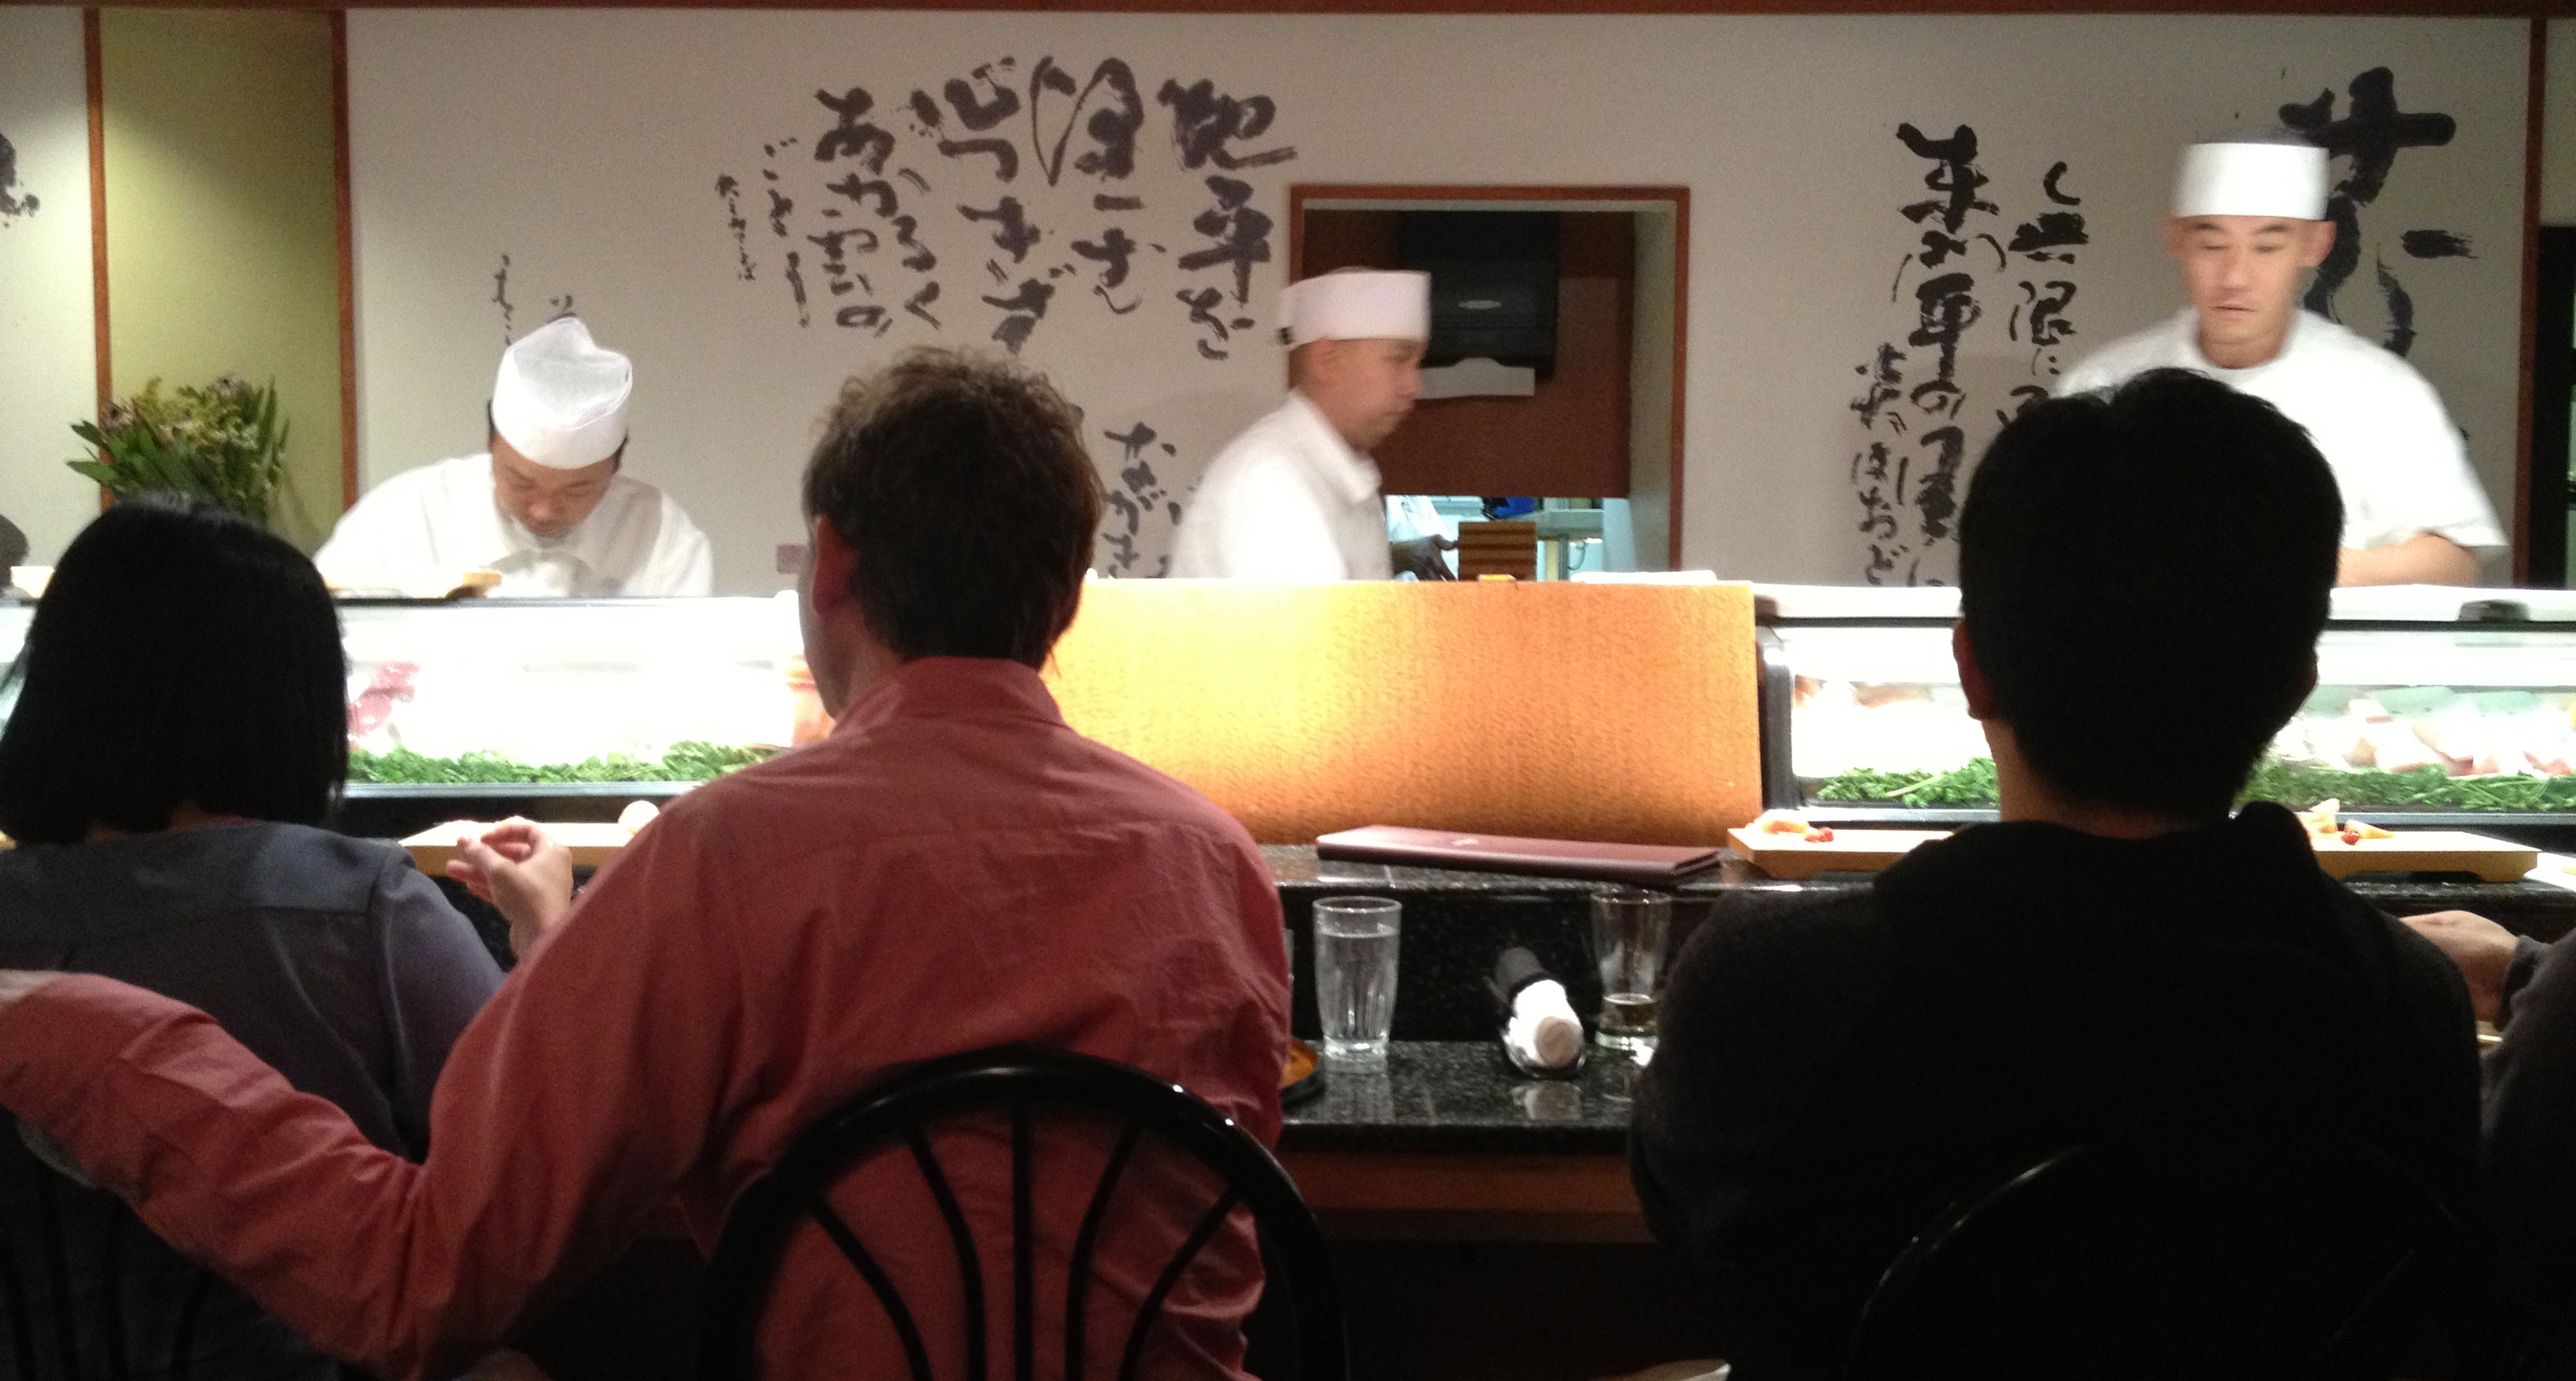 The sushi counter at Shiro